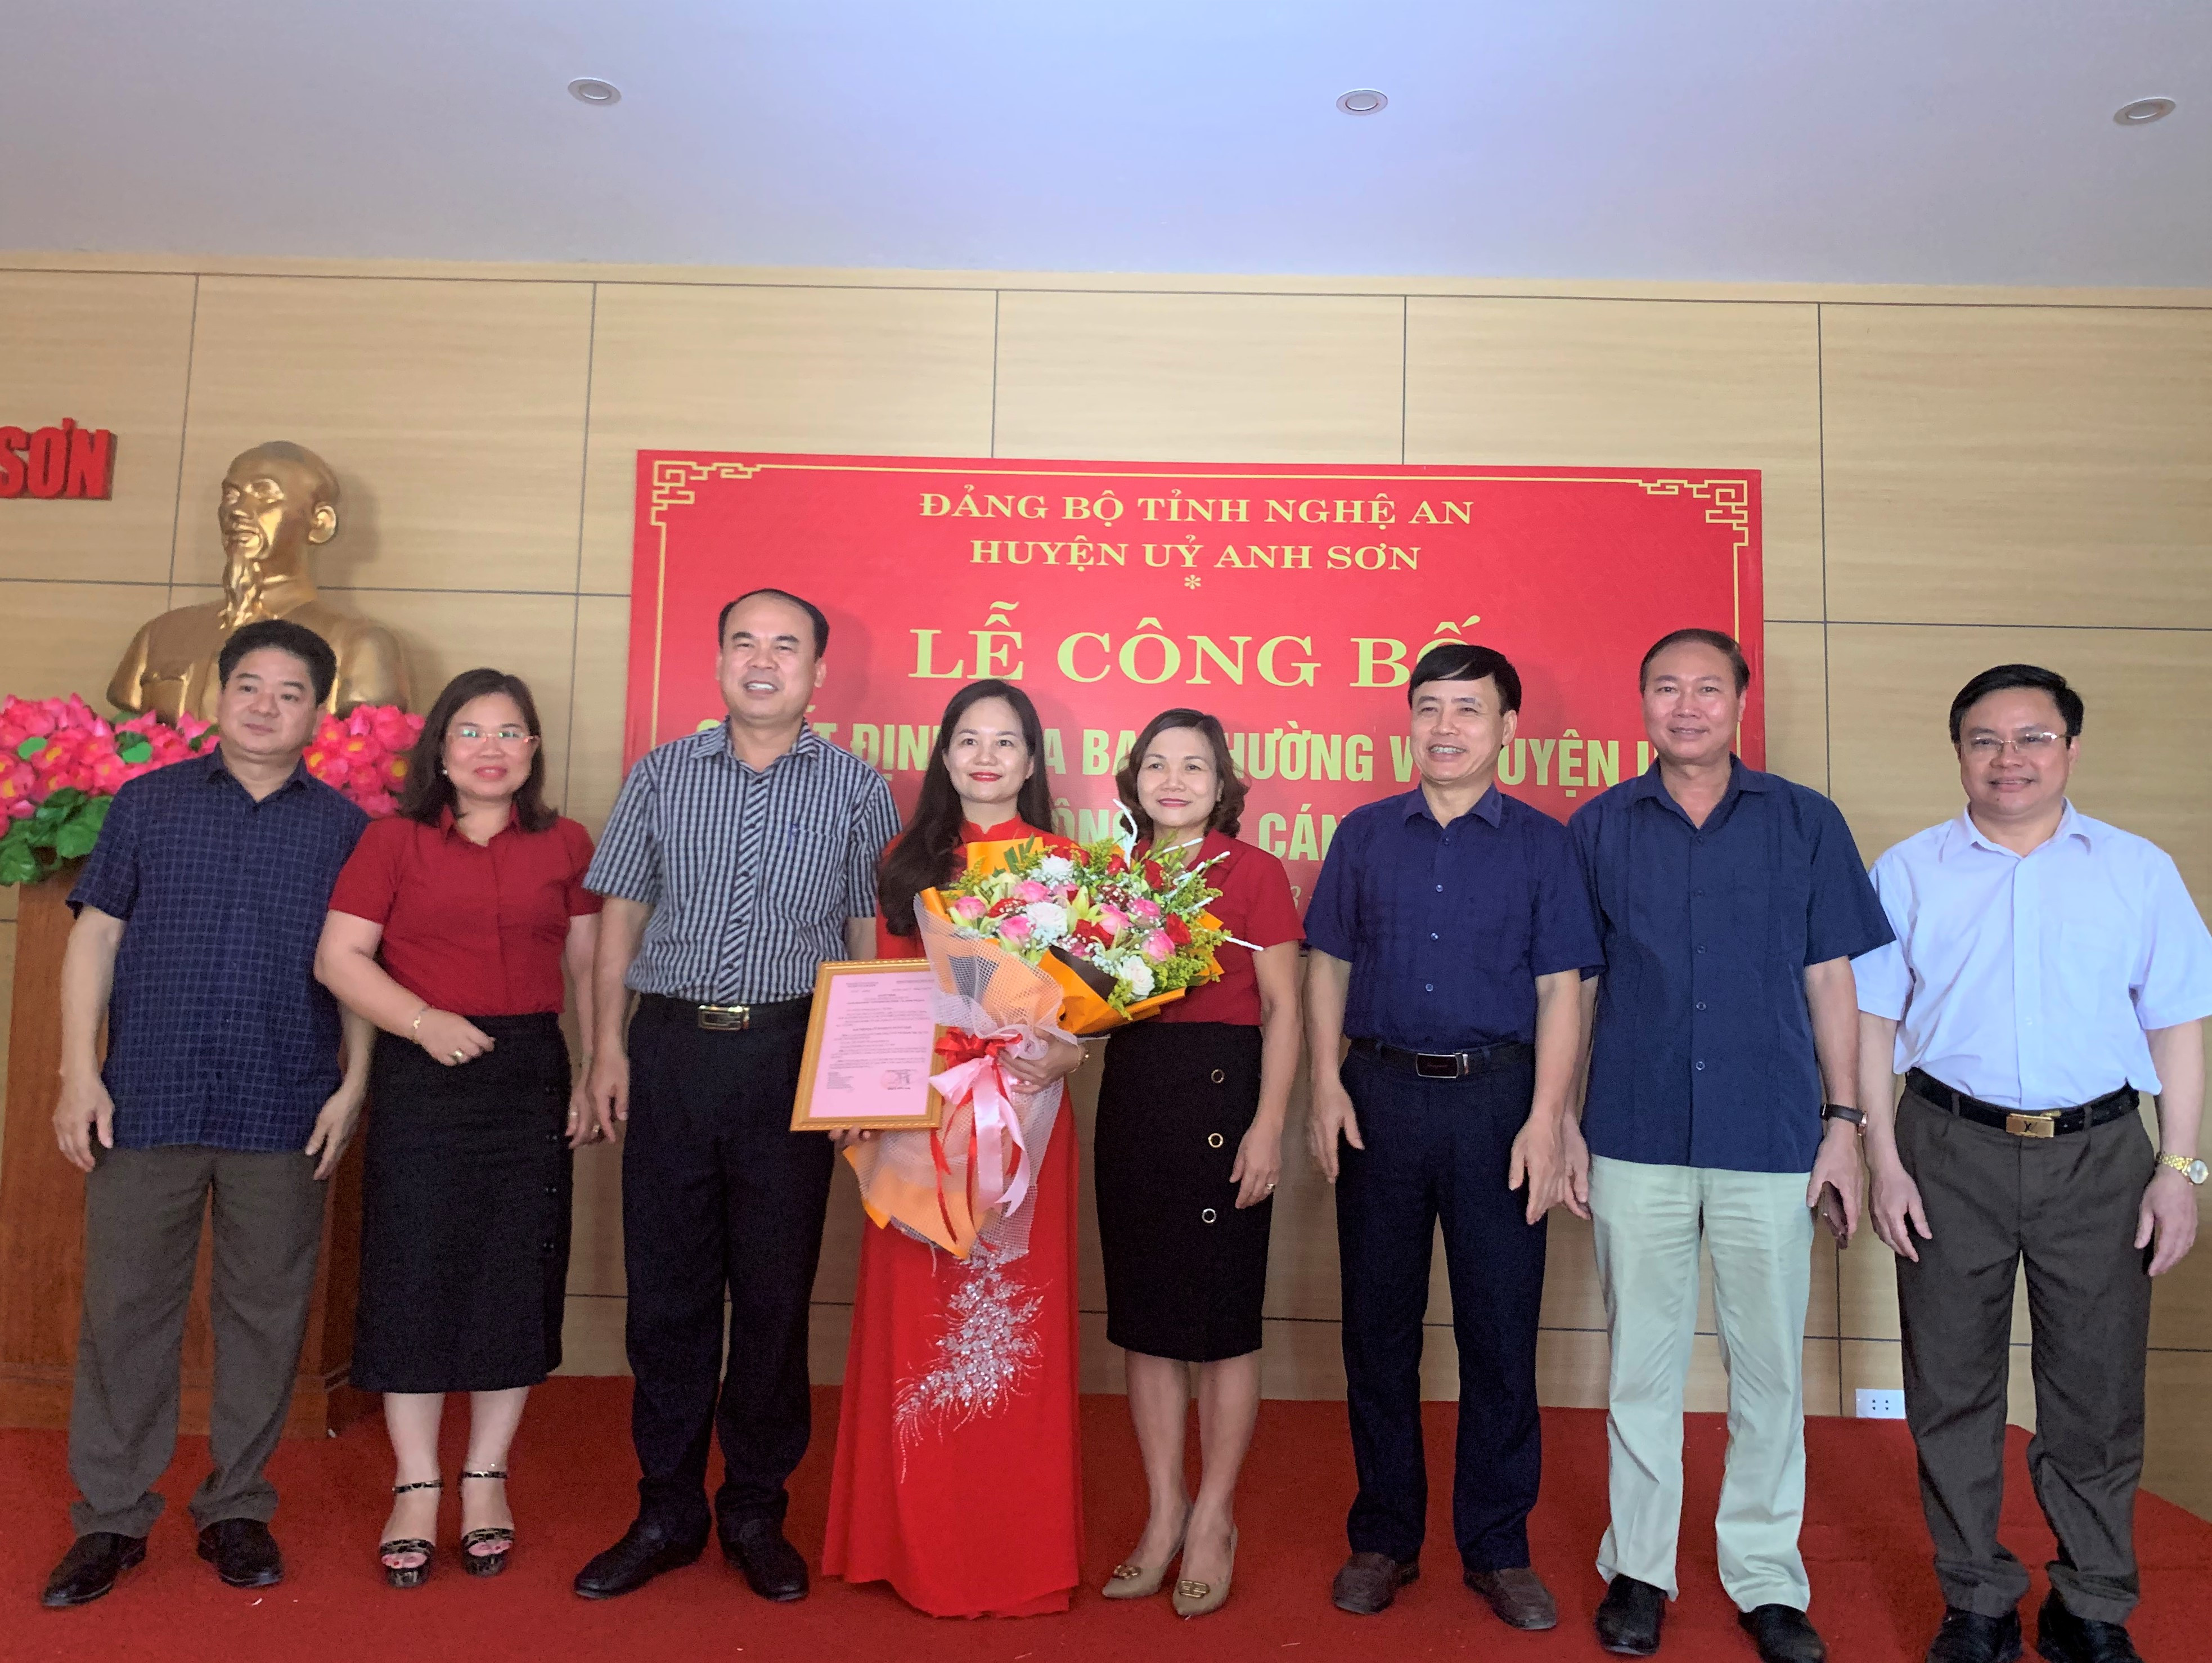 Lãnh đạo cùng các ban của Huyện ủy Anh Sơn tặng hoa chúc mừng tân Phó Chánh văn phòng Huyện ủy. Ảnh Thái Hiền 